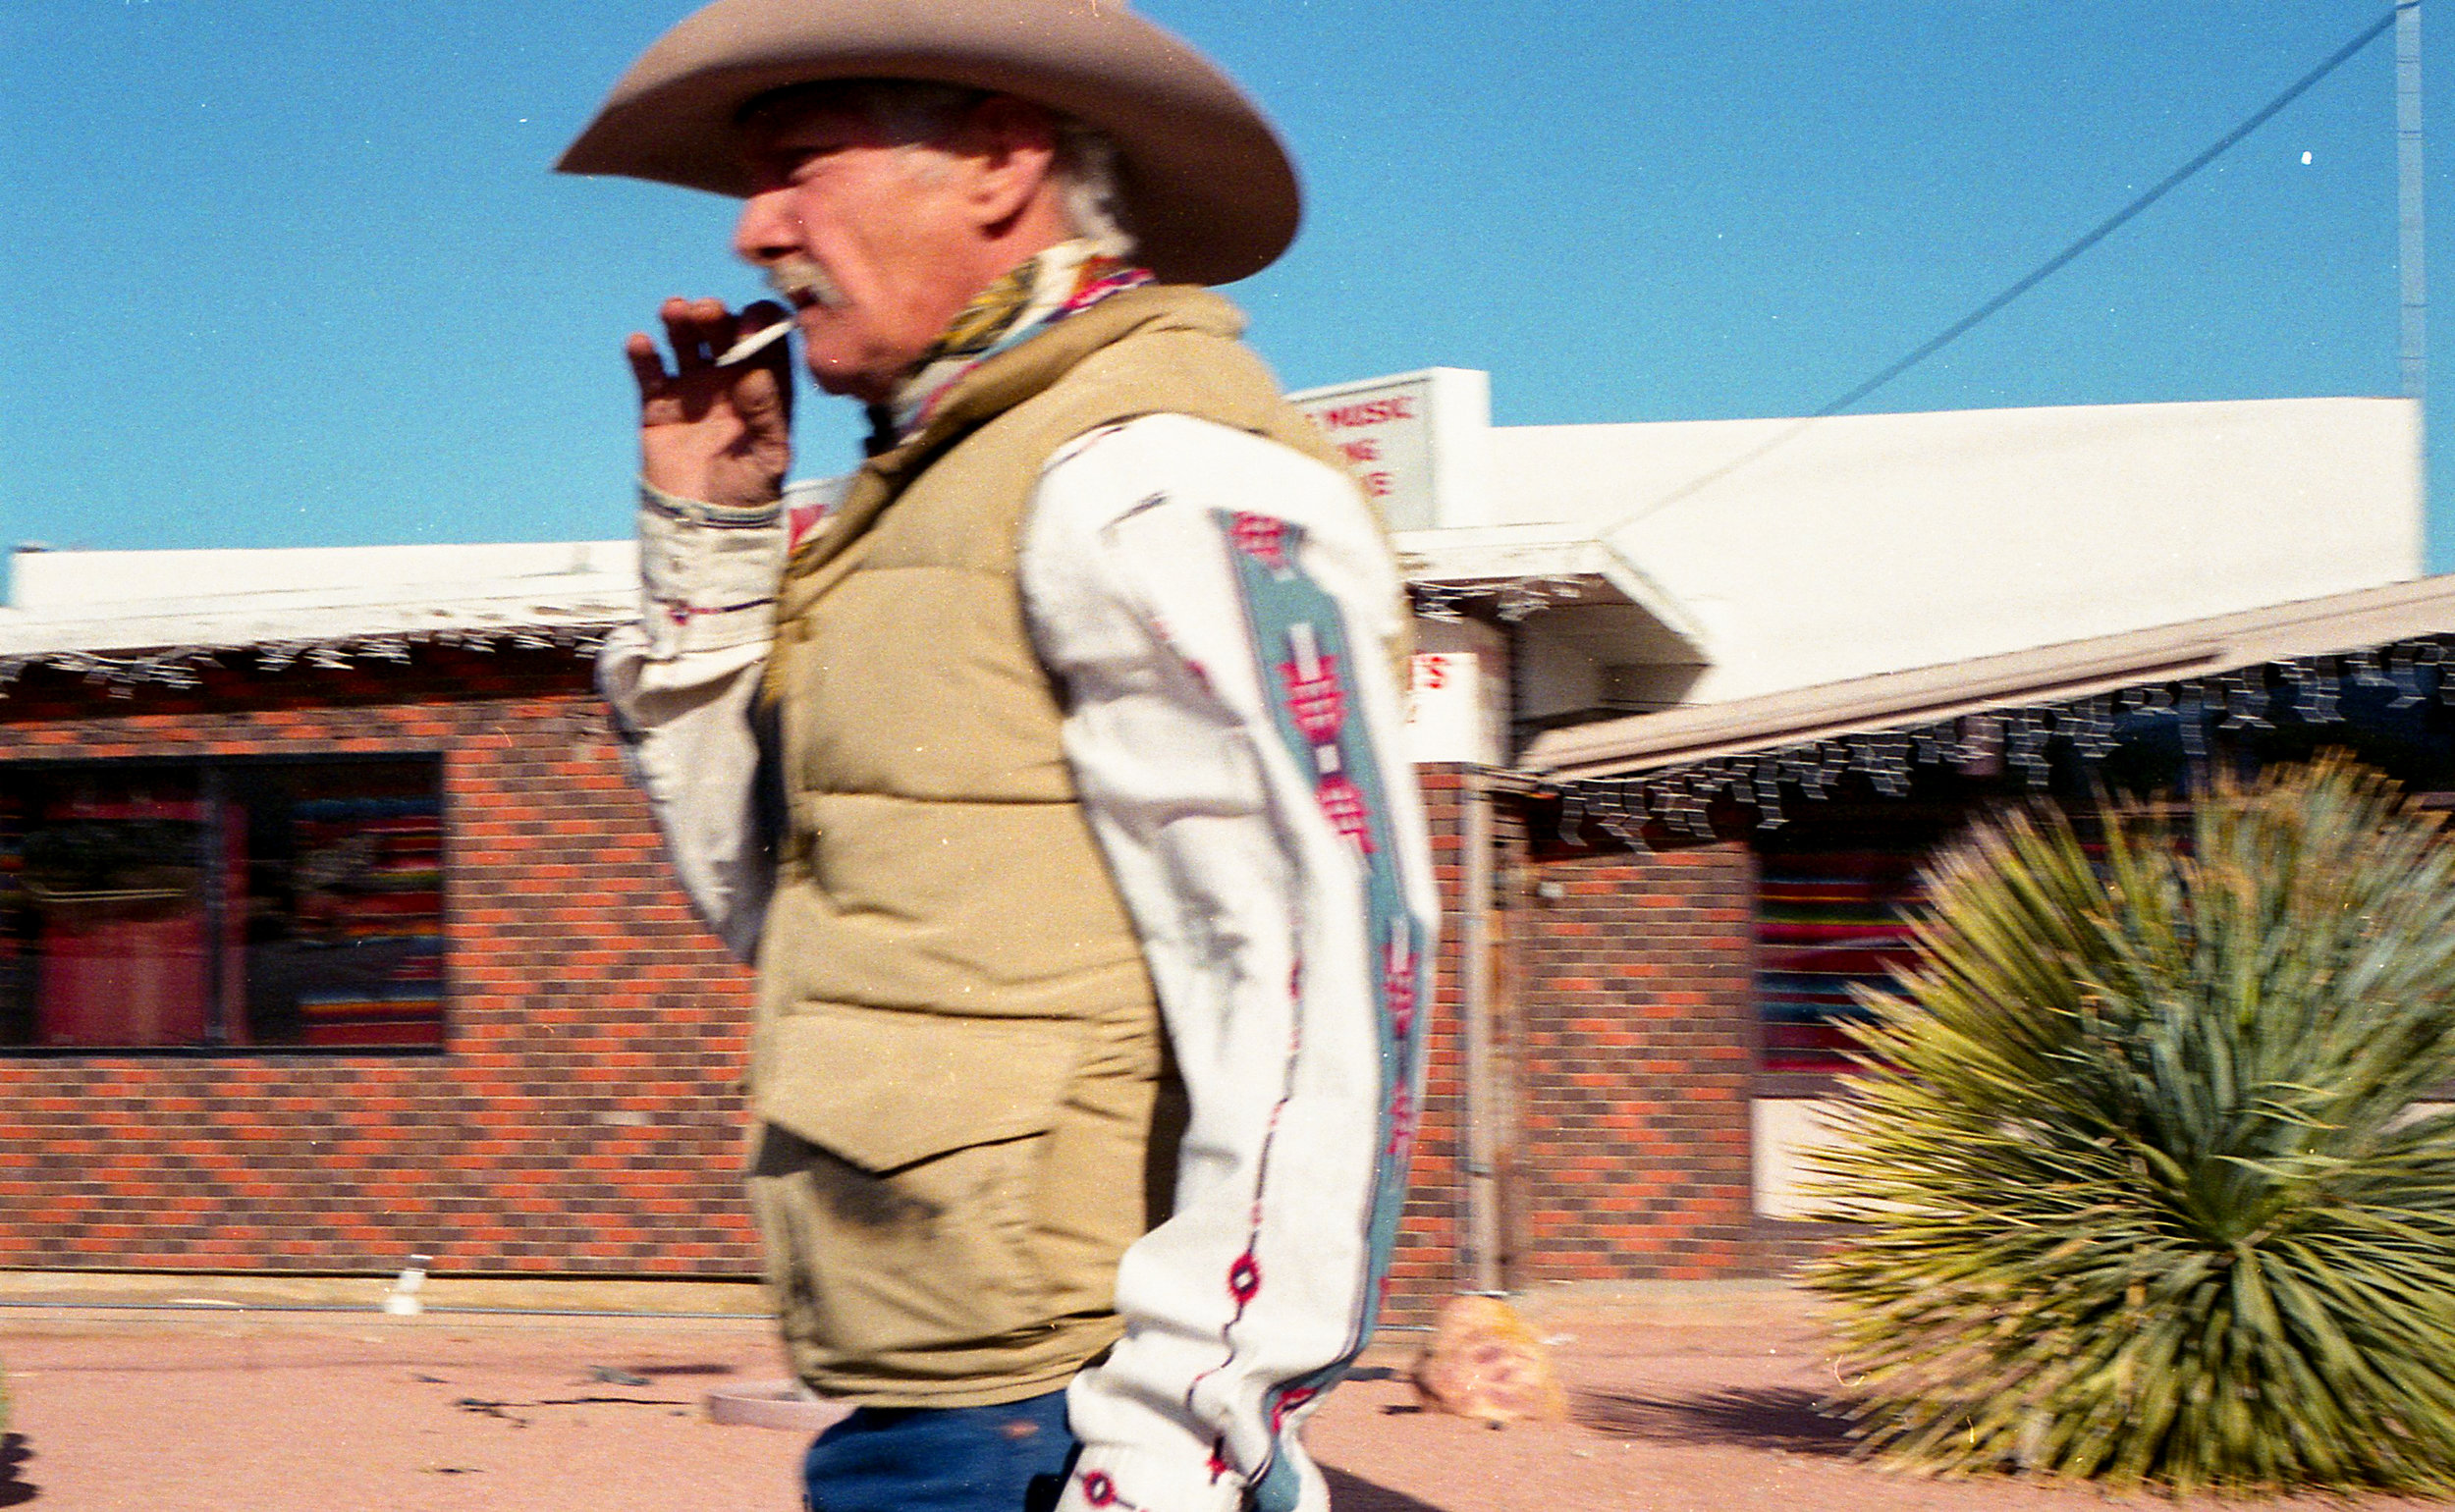  Urban Cowboy | Pecos, Texas 2014 